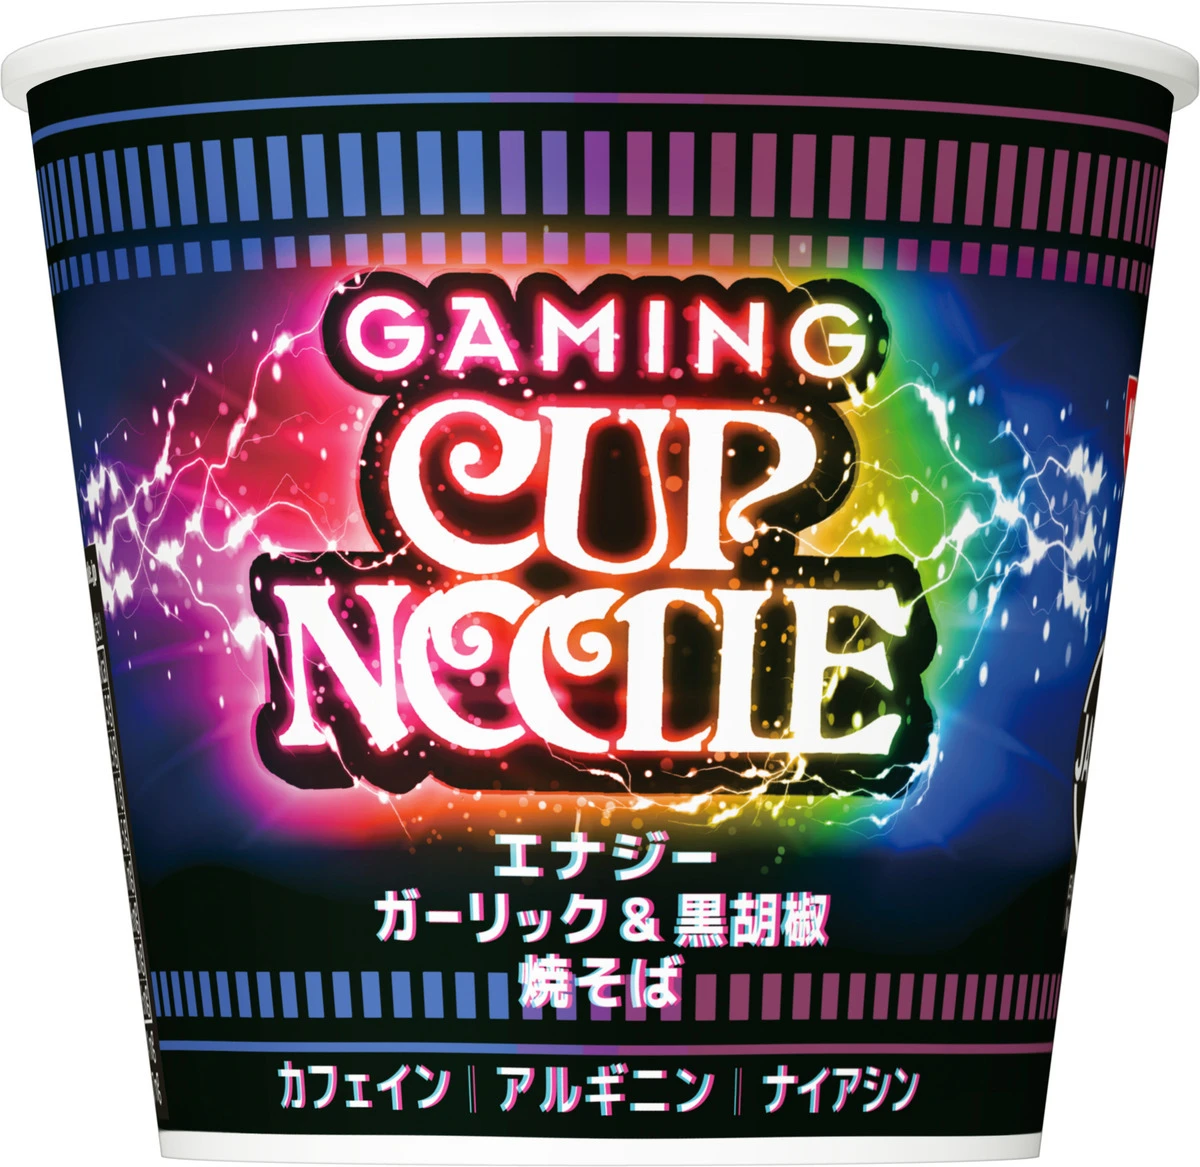 新商品の「ゲーミングカップヌードル」。汁気のない焼きそばでゲームの合間に食べやすい。